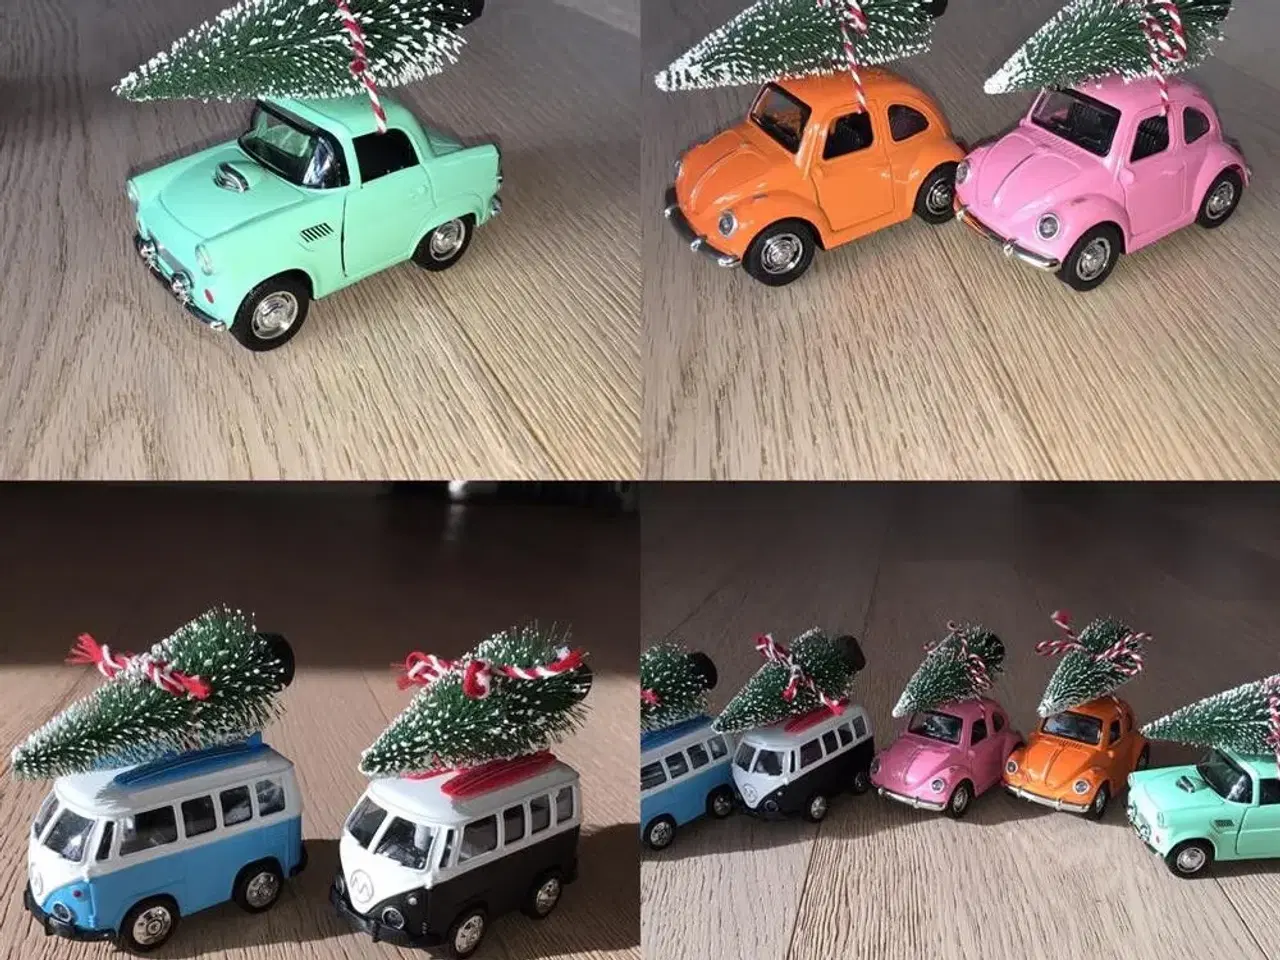 Billede 1 - Retro bil med juletræ på tag